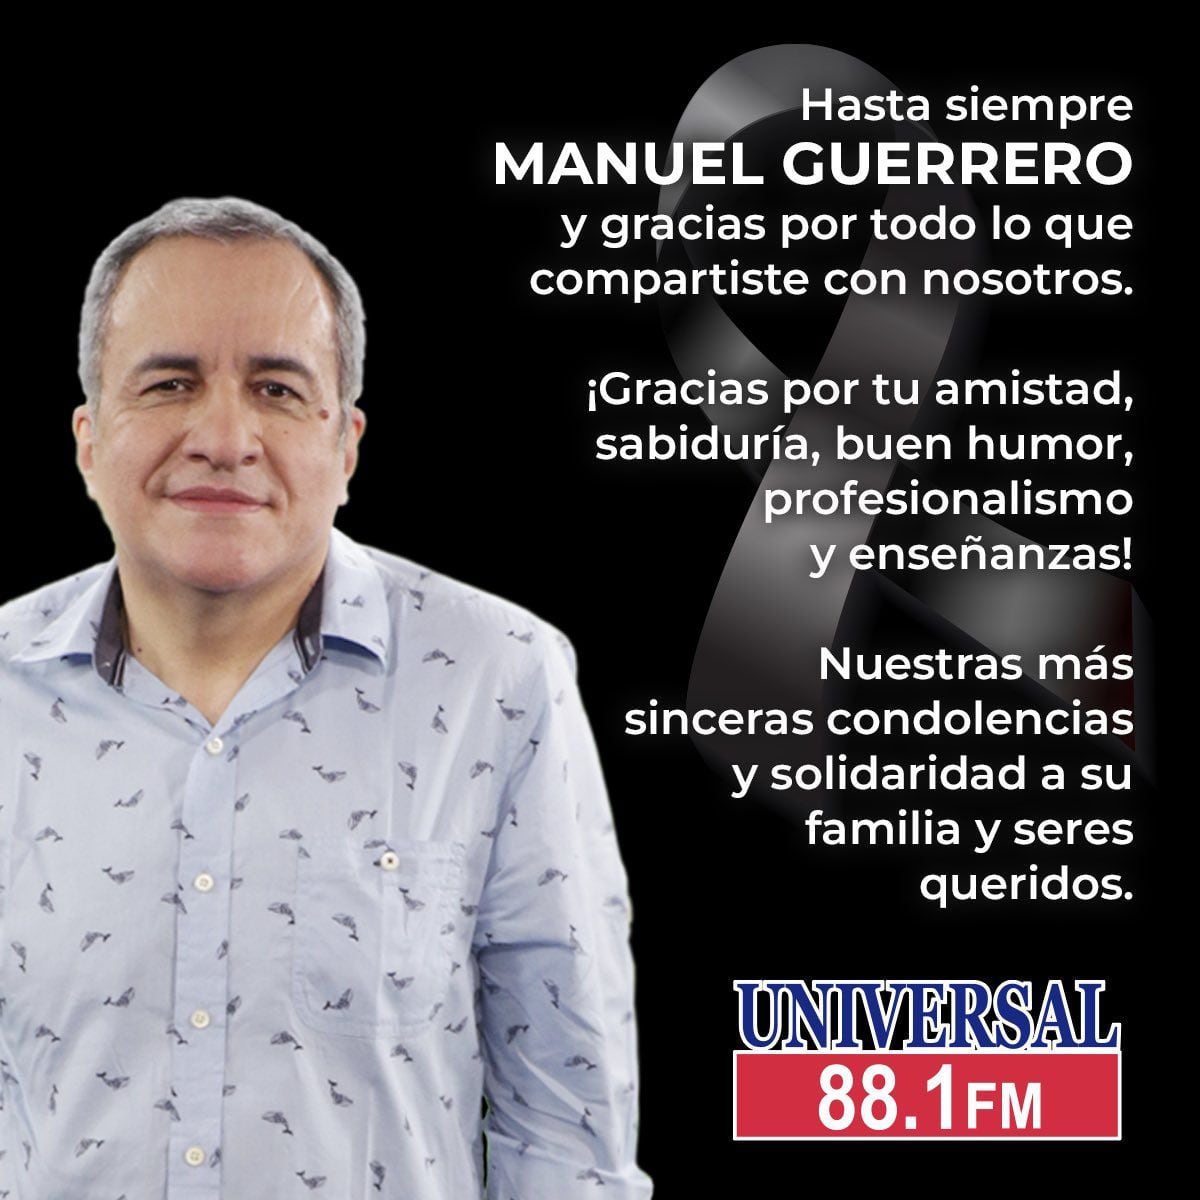 Universal FM 88.1 lamentó el deceso de Manuel Guerrero (X/@universal881fm)